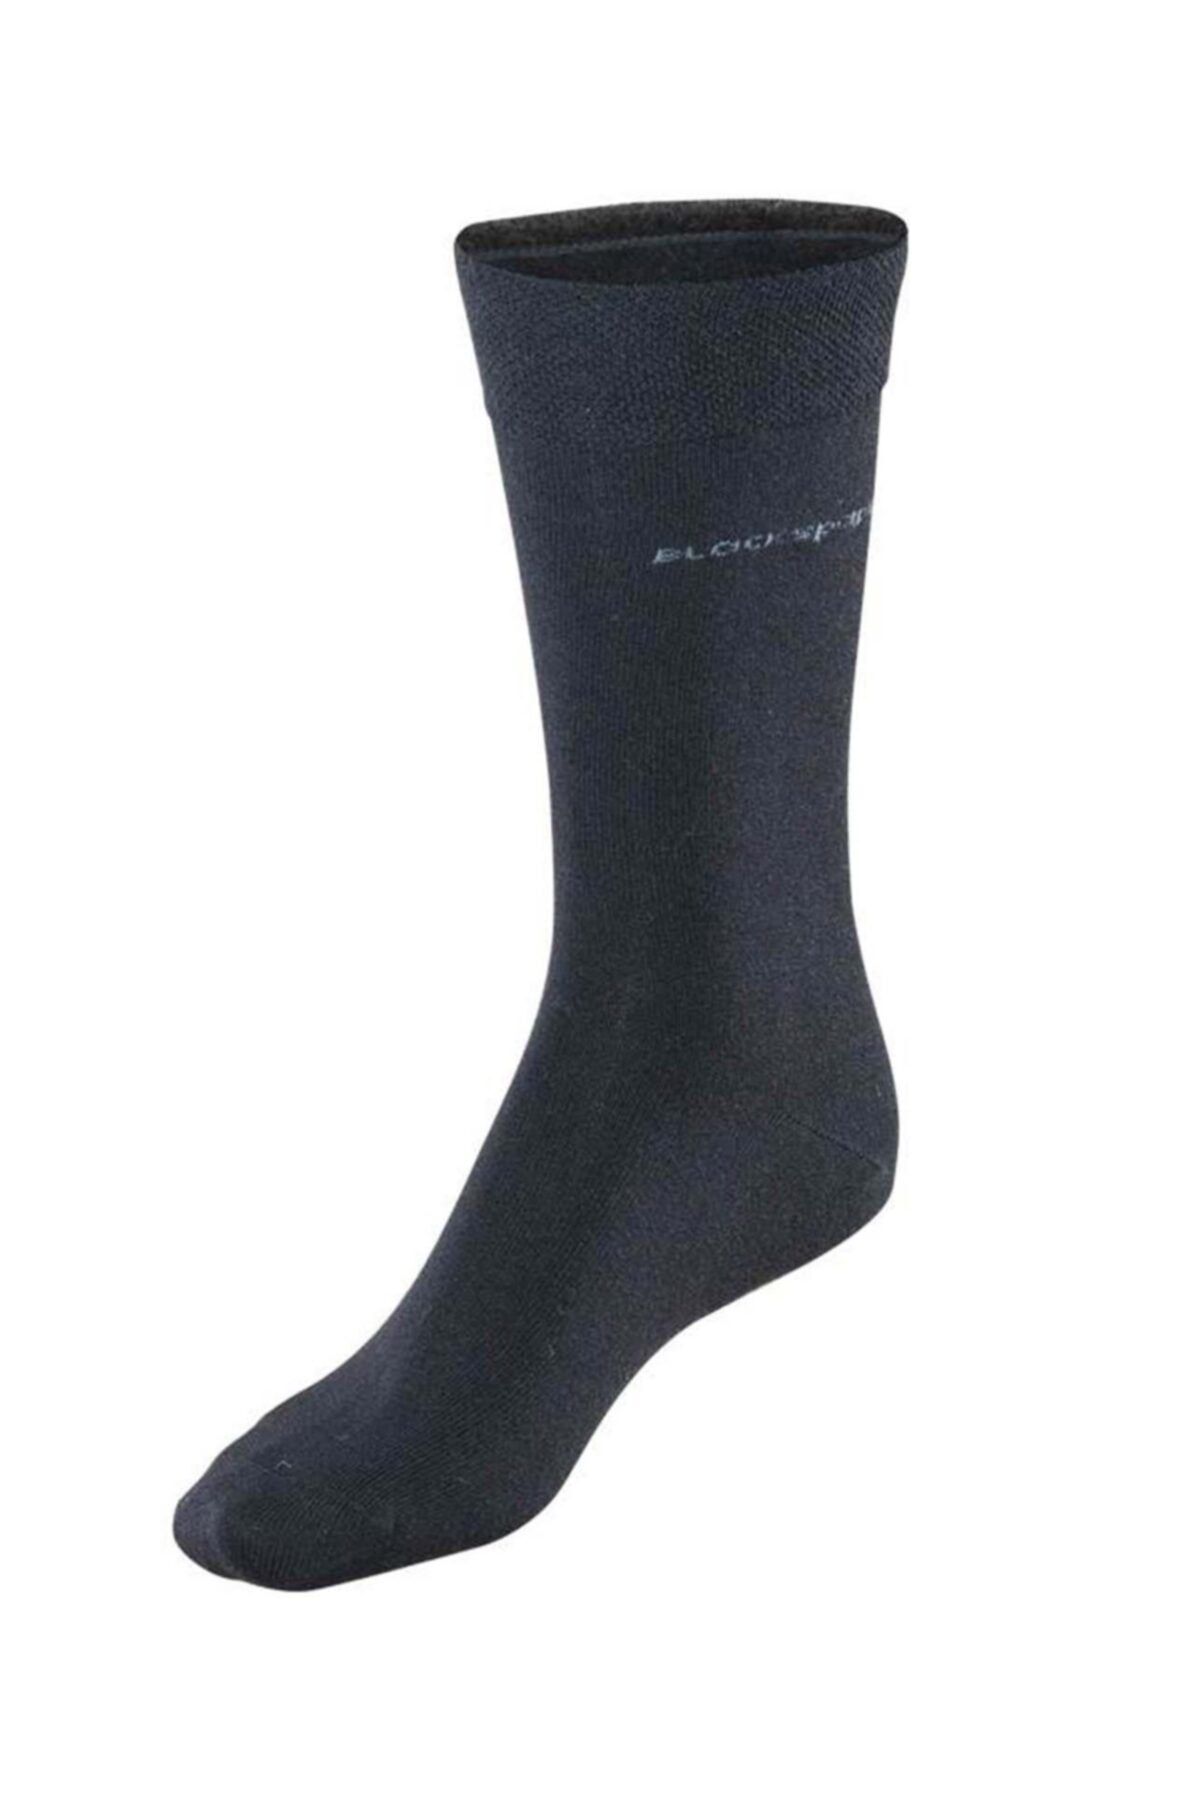 Blackspade Erkek Termal Çorap